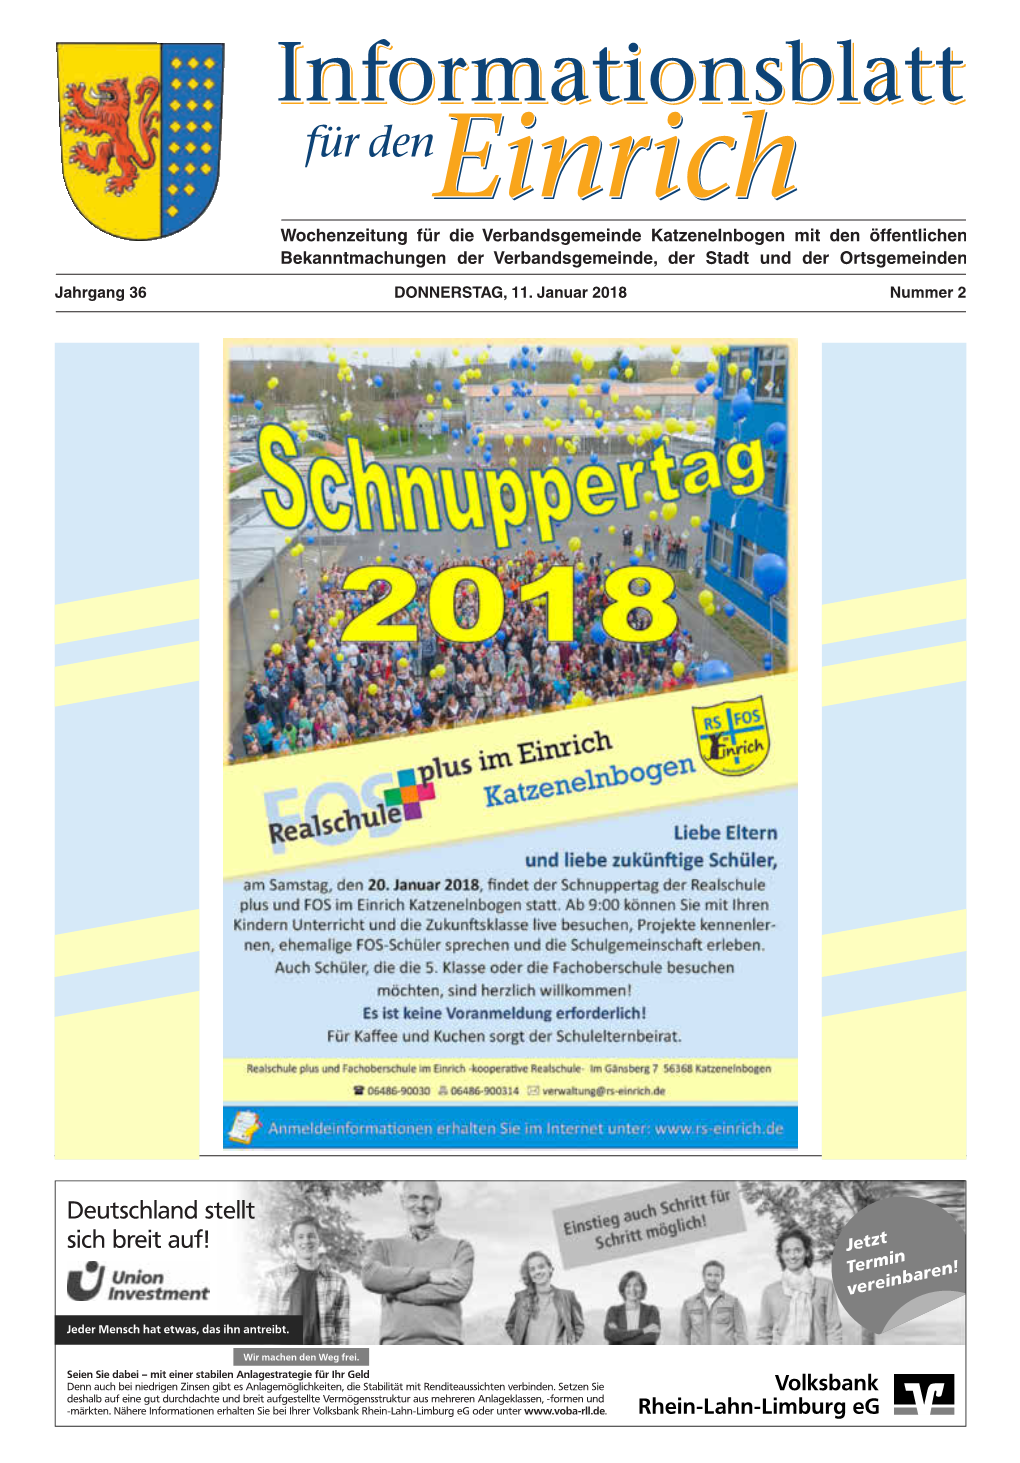 Katzenelnbogen Mit Den Öffentlichen Bekanntmachungen Der Verbandsgemeinde, Der Stadt Und Der Ortsgemeinden